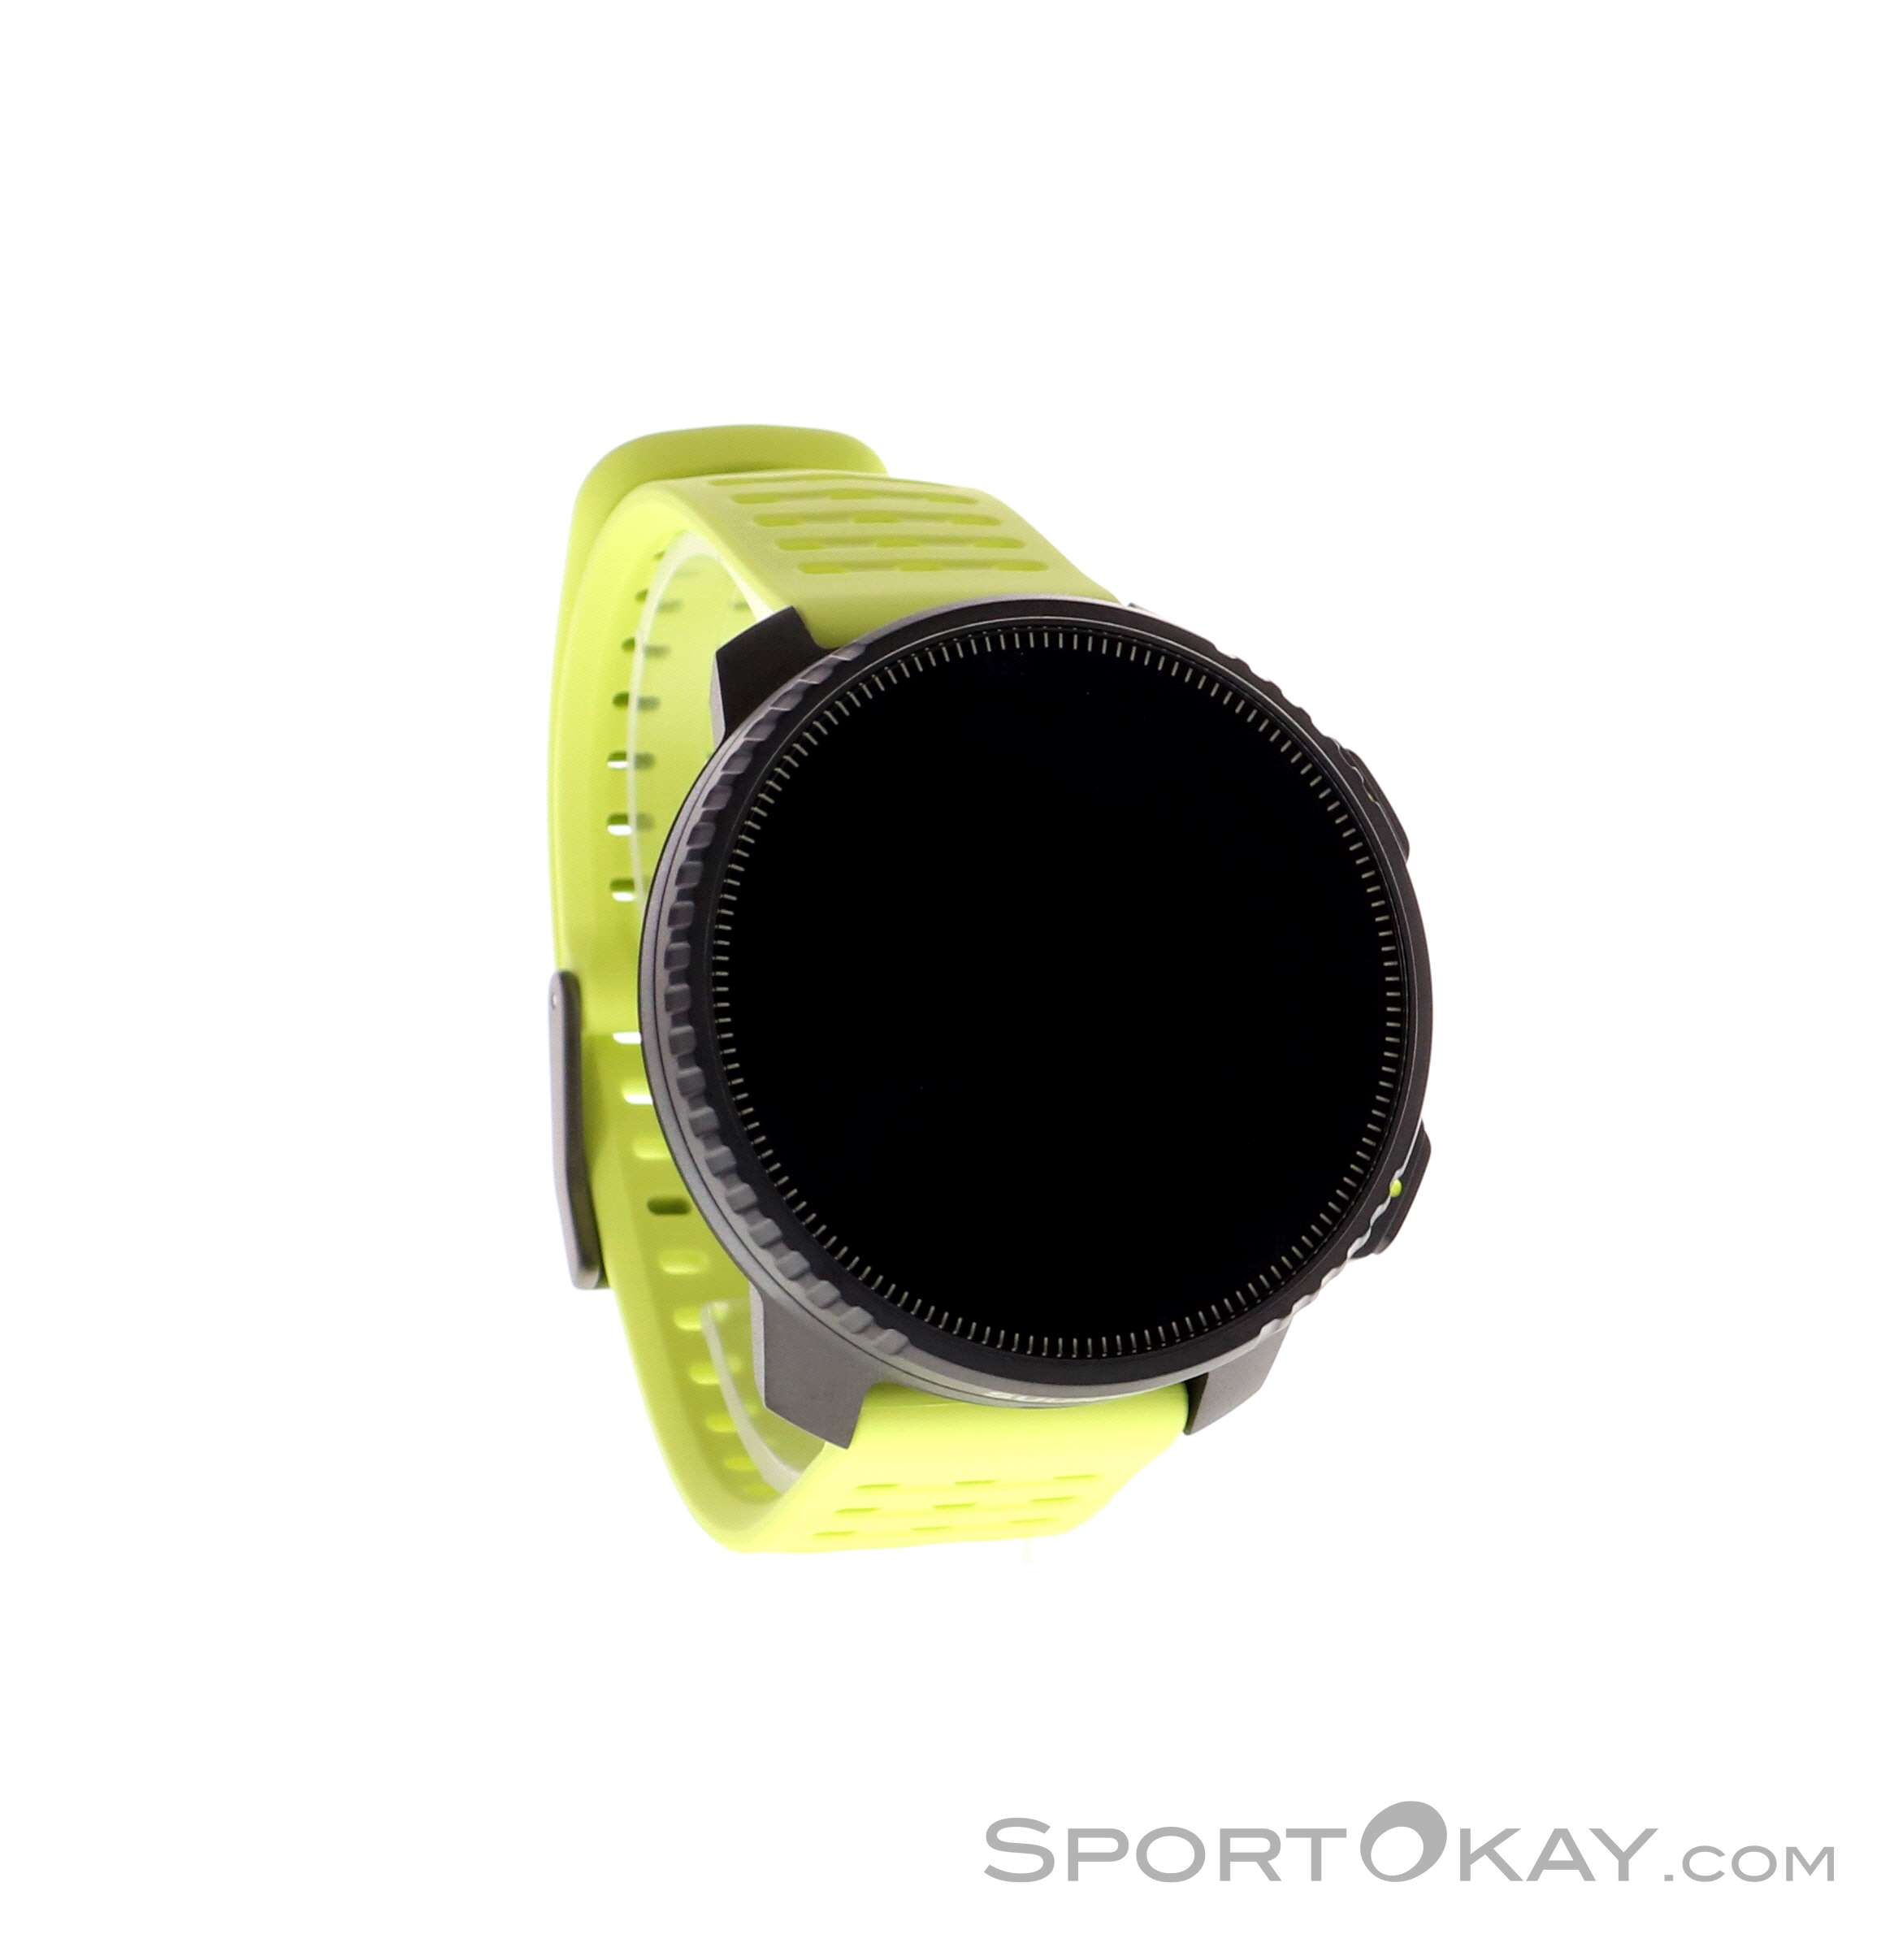 Montre connectée sport GPS - ALTIMETRE - SUUNTO - VERTICAL - Black Sand  Diamètre écran 49 mm